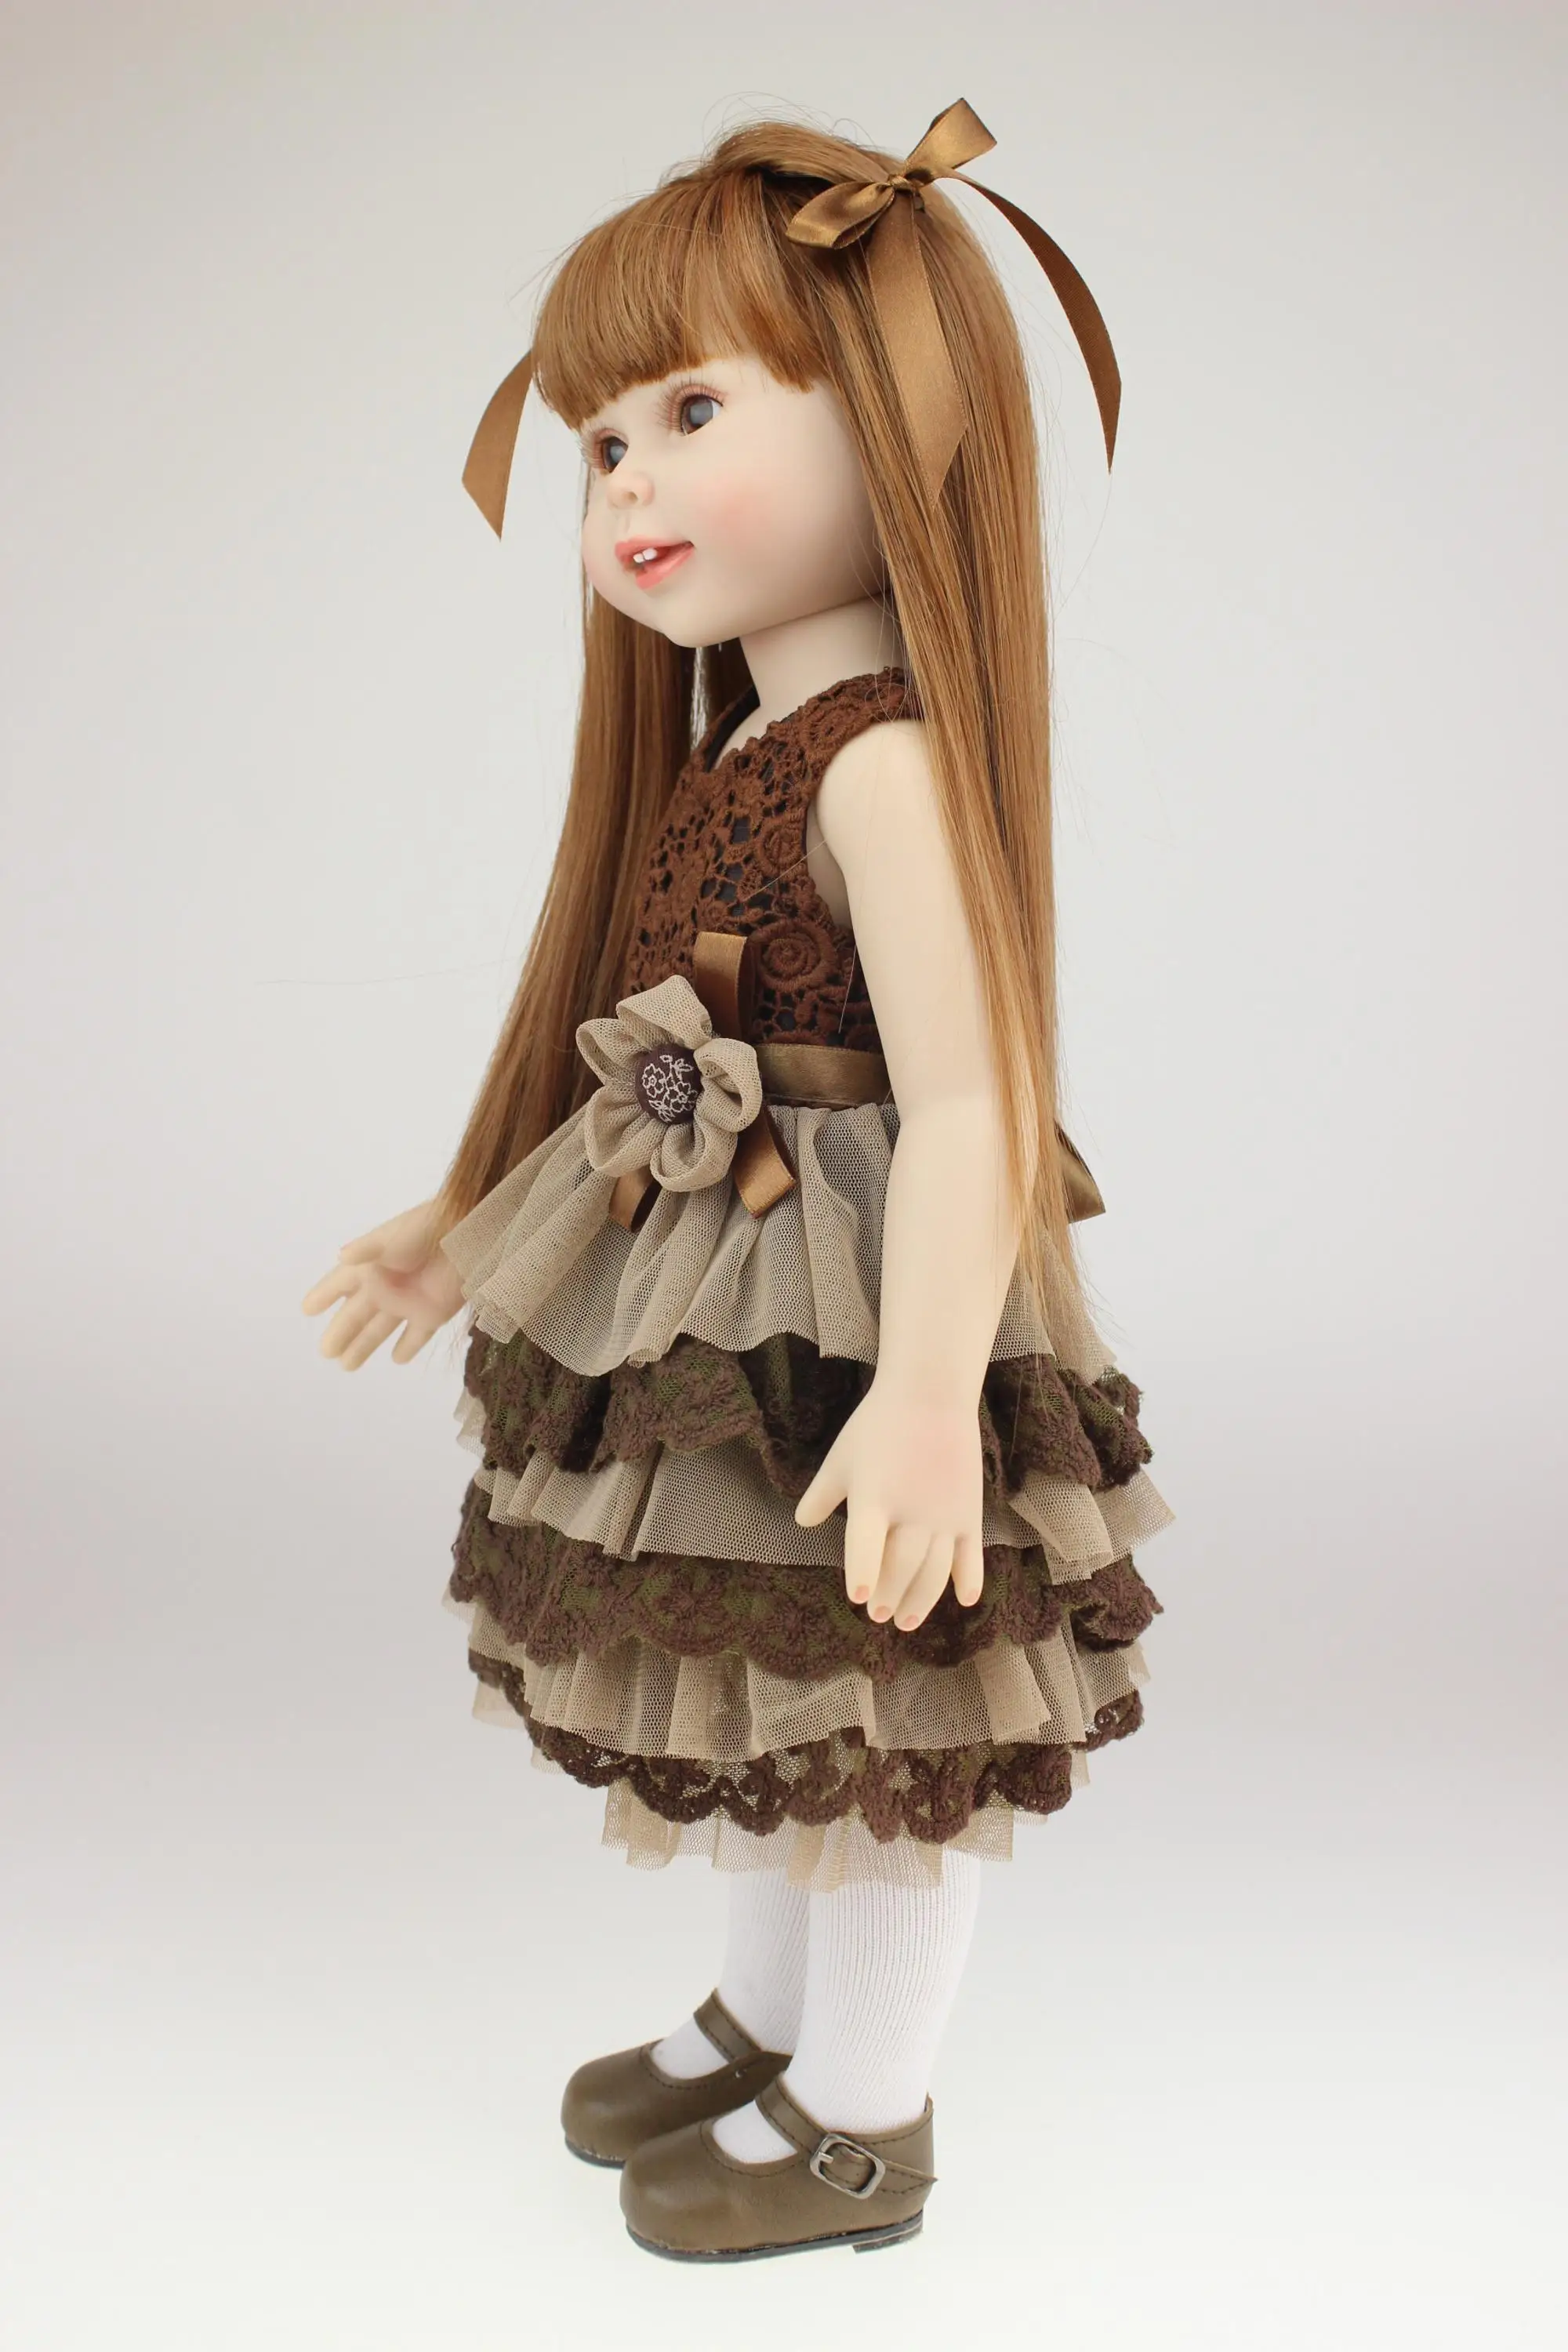 18'' America Girl Plastic Girl Doll - Buy America Girl Doll Factory